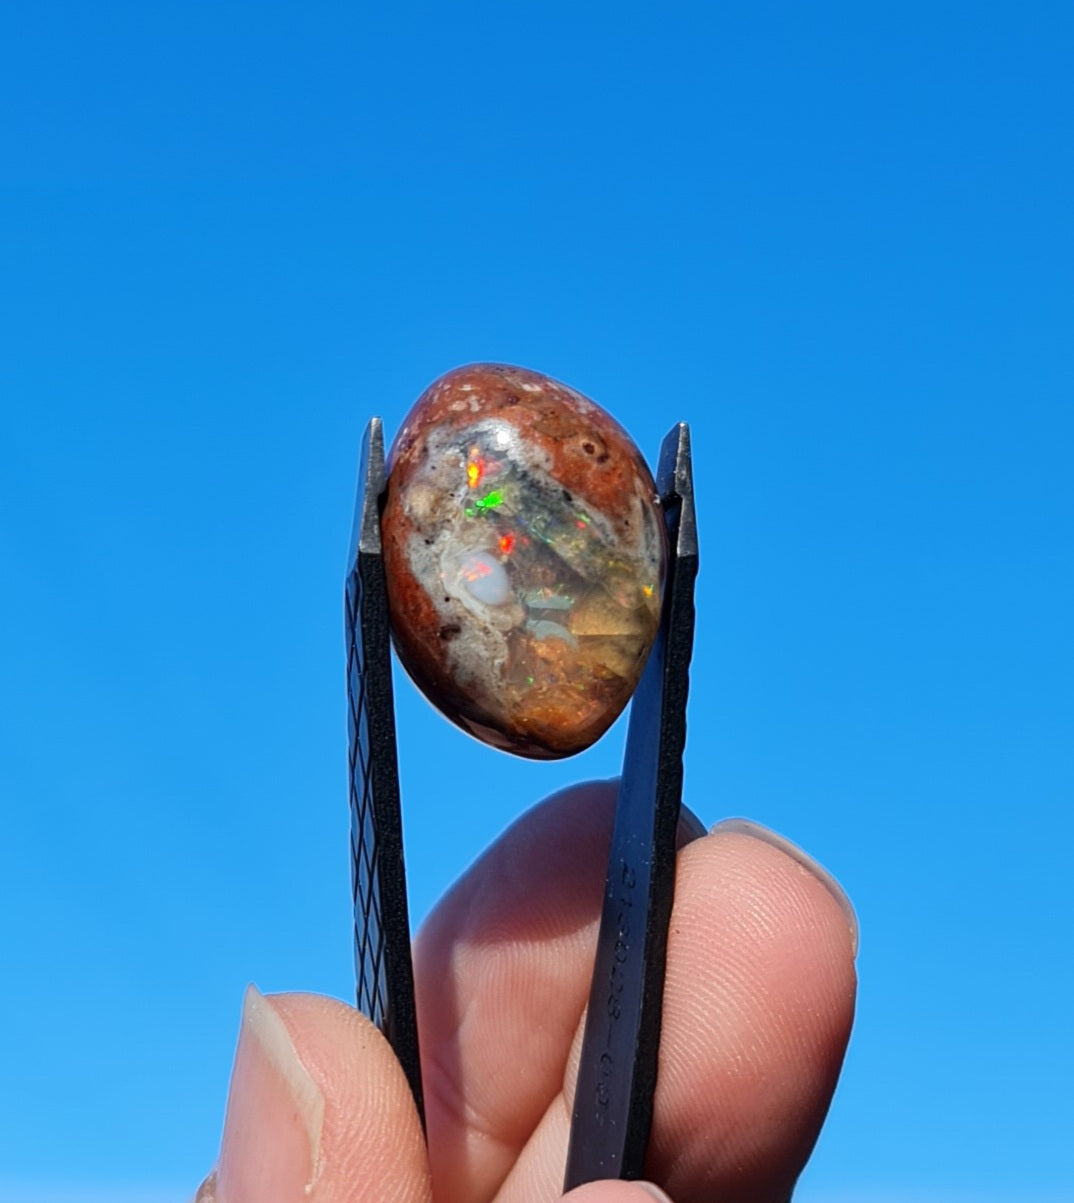 Mexican Cantera Opal